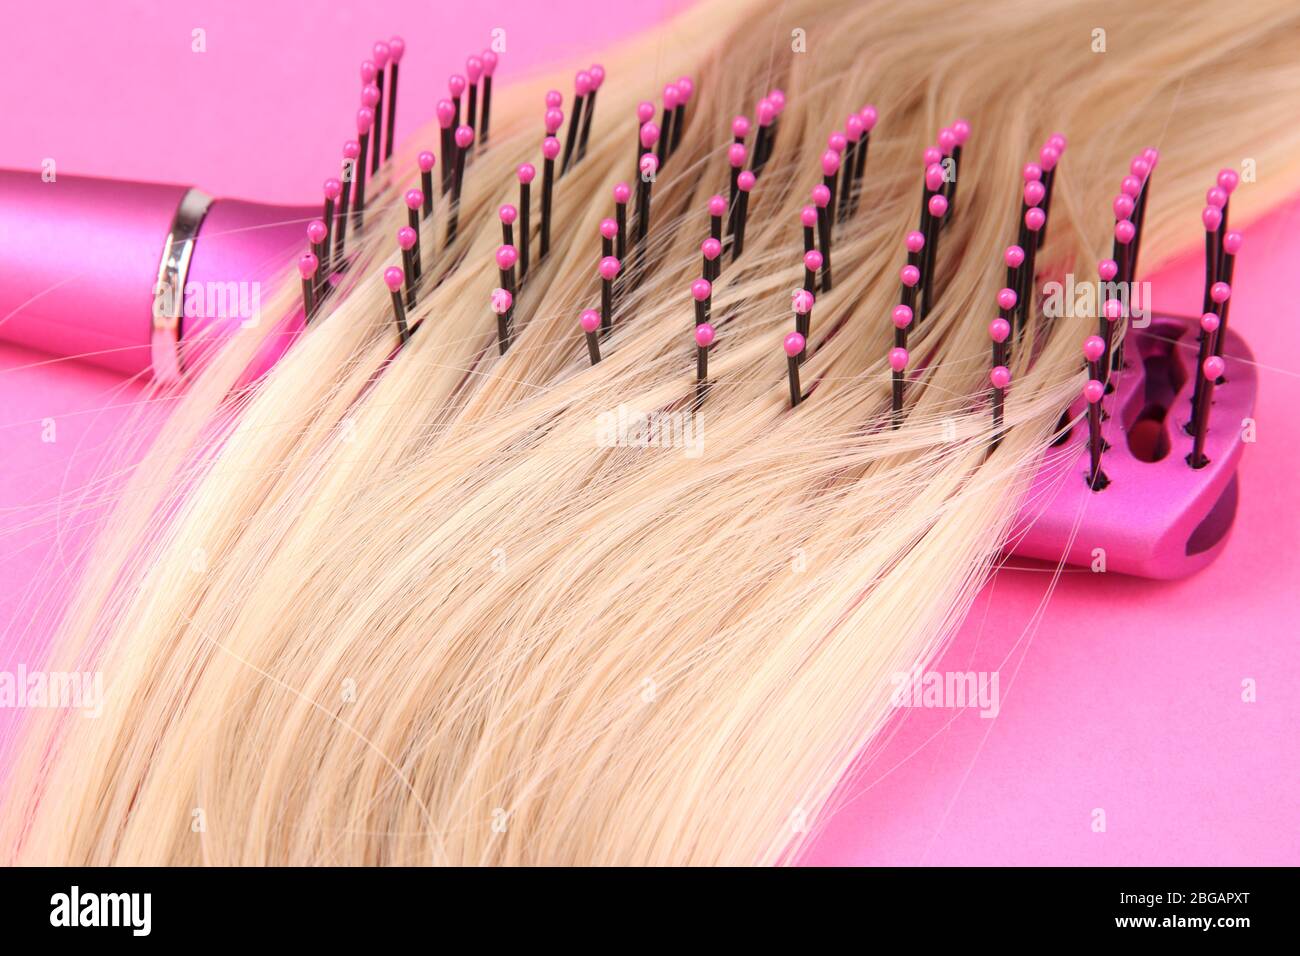 Capelli lunghi biondi con spazzola su sfondo rosa Foto Stock